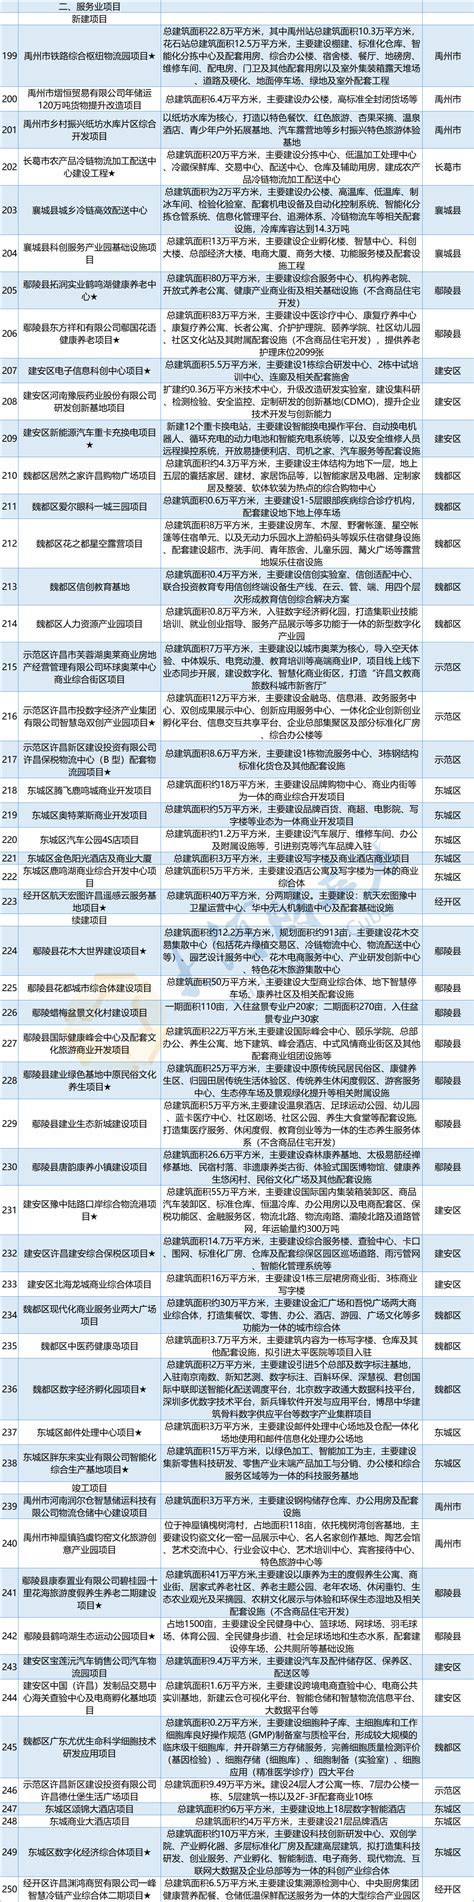 许昌市第六批非物质文化遗产代表性项目名录公布 - 河南省文化和旅游厅